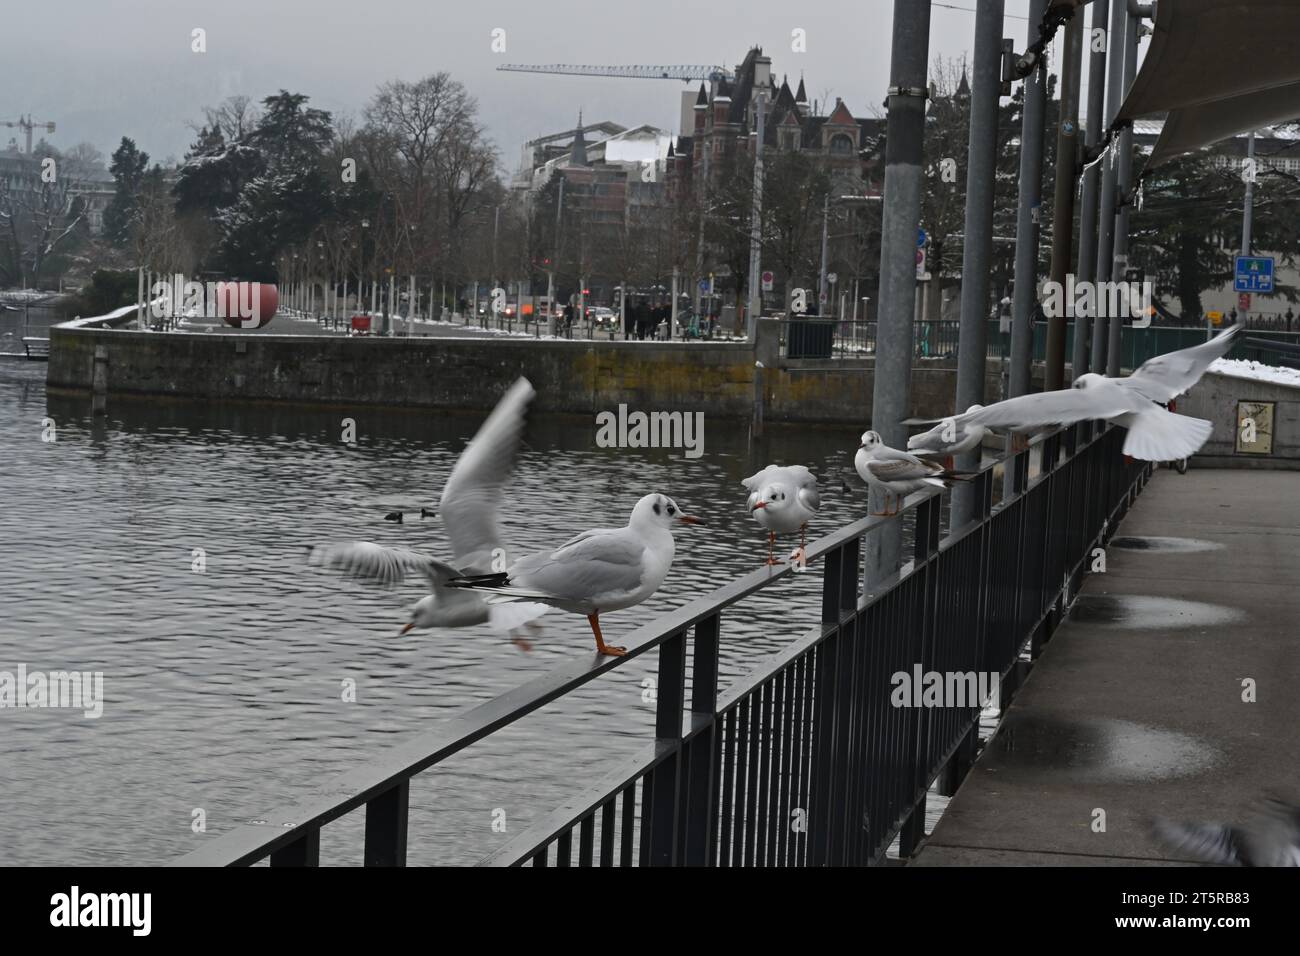 Lungomare sul lago di Zurigo nel porto personale. Ci sono ringhiere grigie che incorniciano il molo e gabbiani sono seduti su di esso. Foto Stock